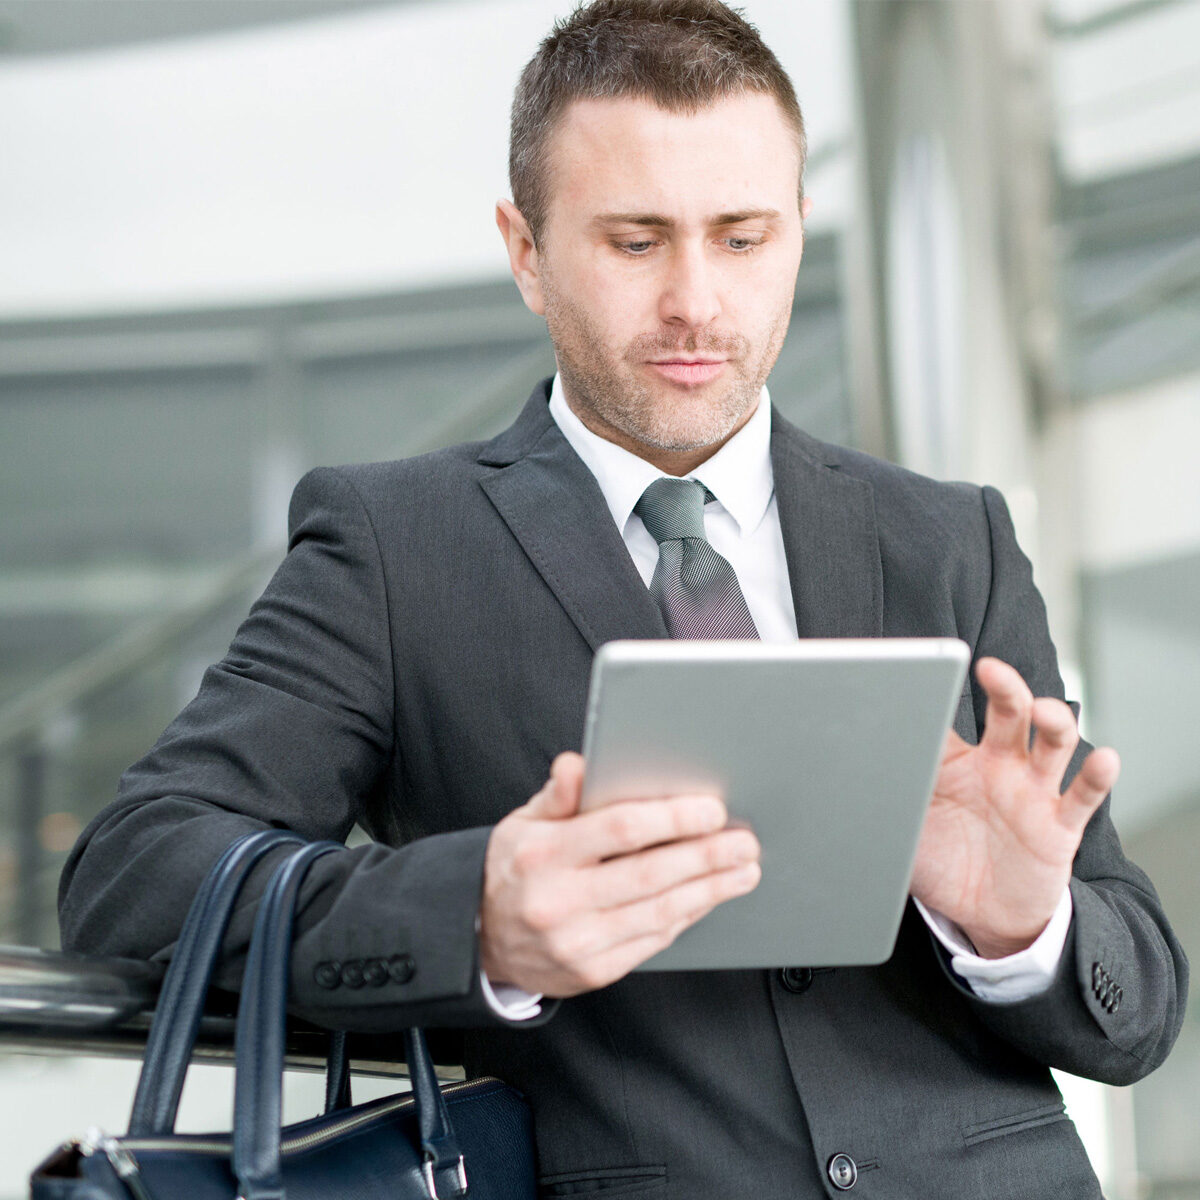 Un ejecutivo joven y de apariencia prolija revisa una tablet, usa un traje y tiene colgado de su brazo un maletin con asas de una cartera o bolso de cuero negro.